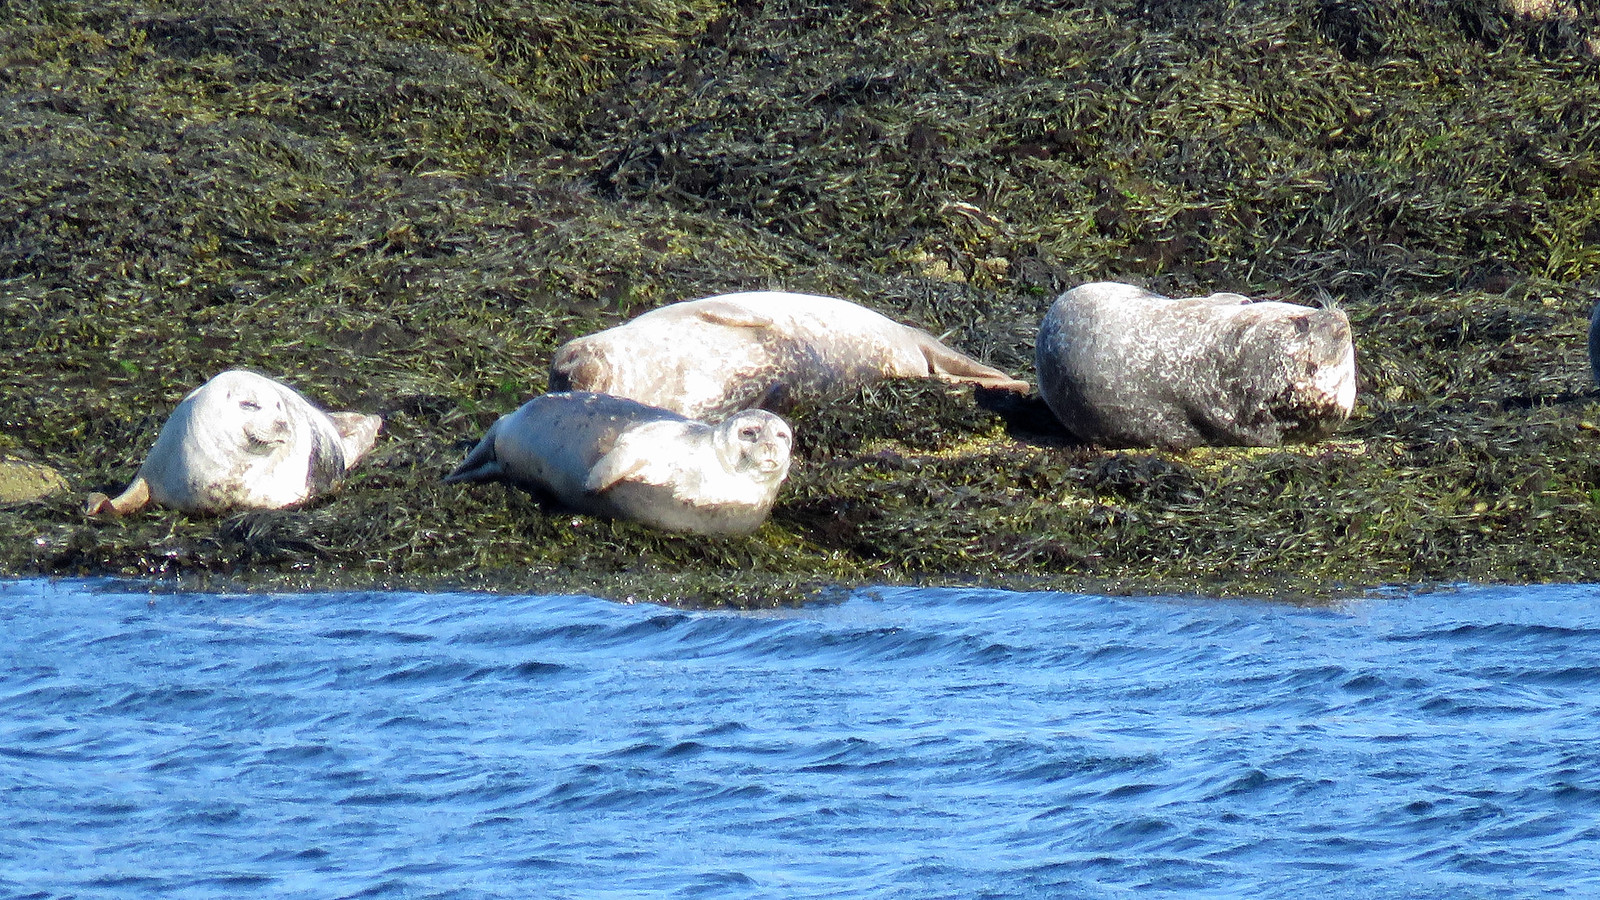 Harbour Seals - Phoca vitulina